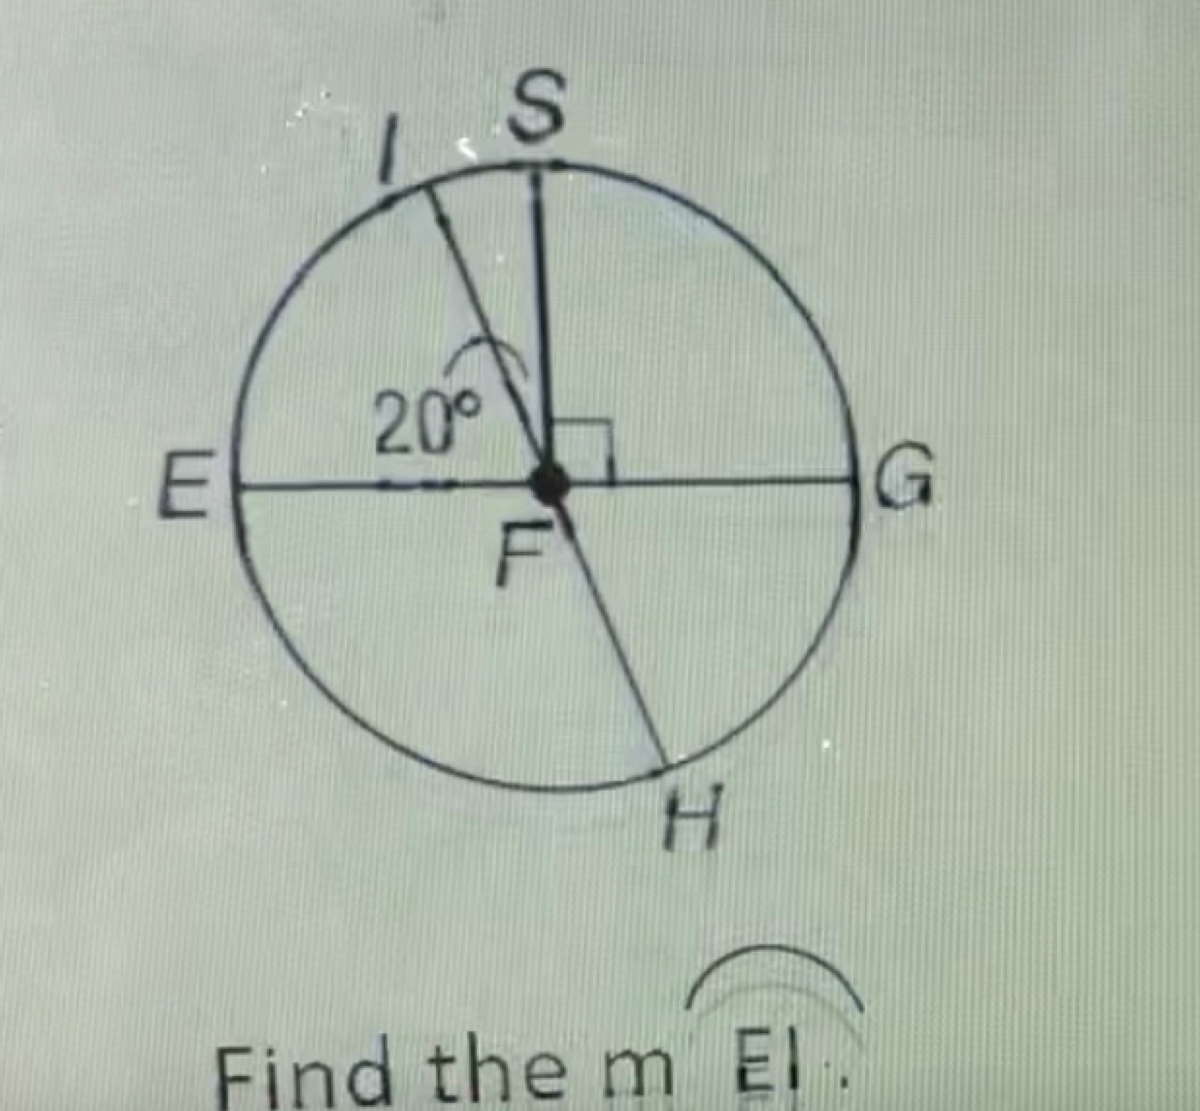 20°
F
H.
Find the m EI.
